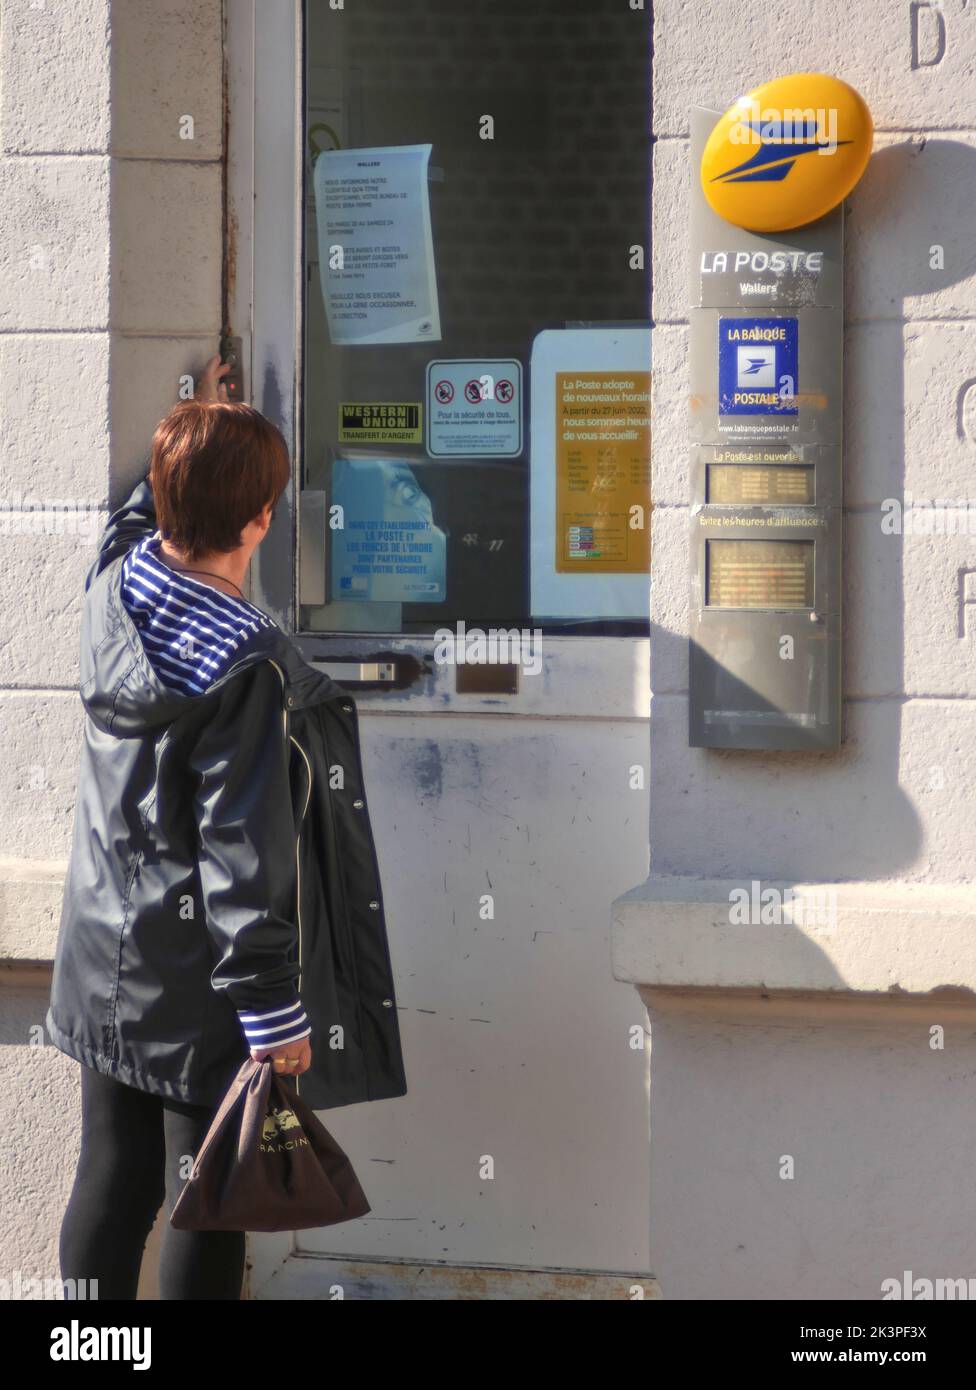 Wallers, France - 09 23 2022 : donna caucasica che suona il campanello dell'ufficio postale per entrare. Foto Stock